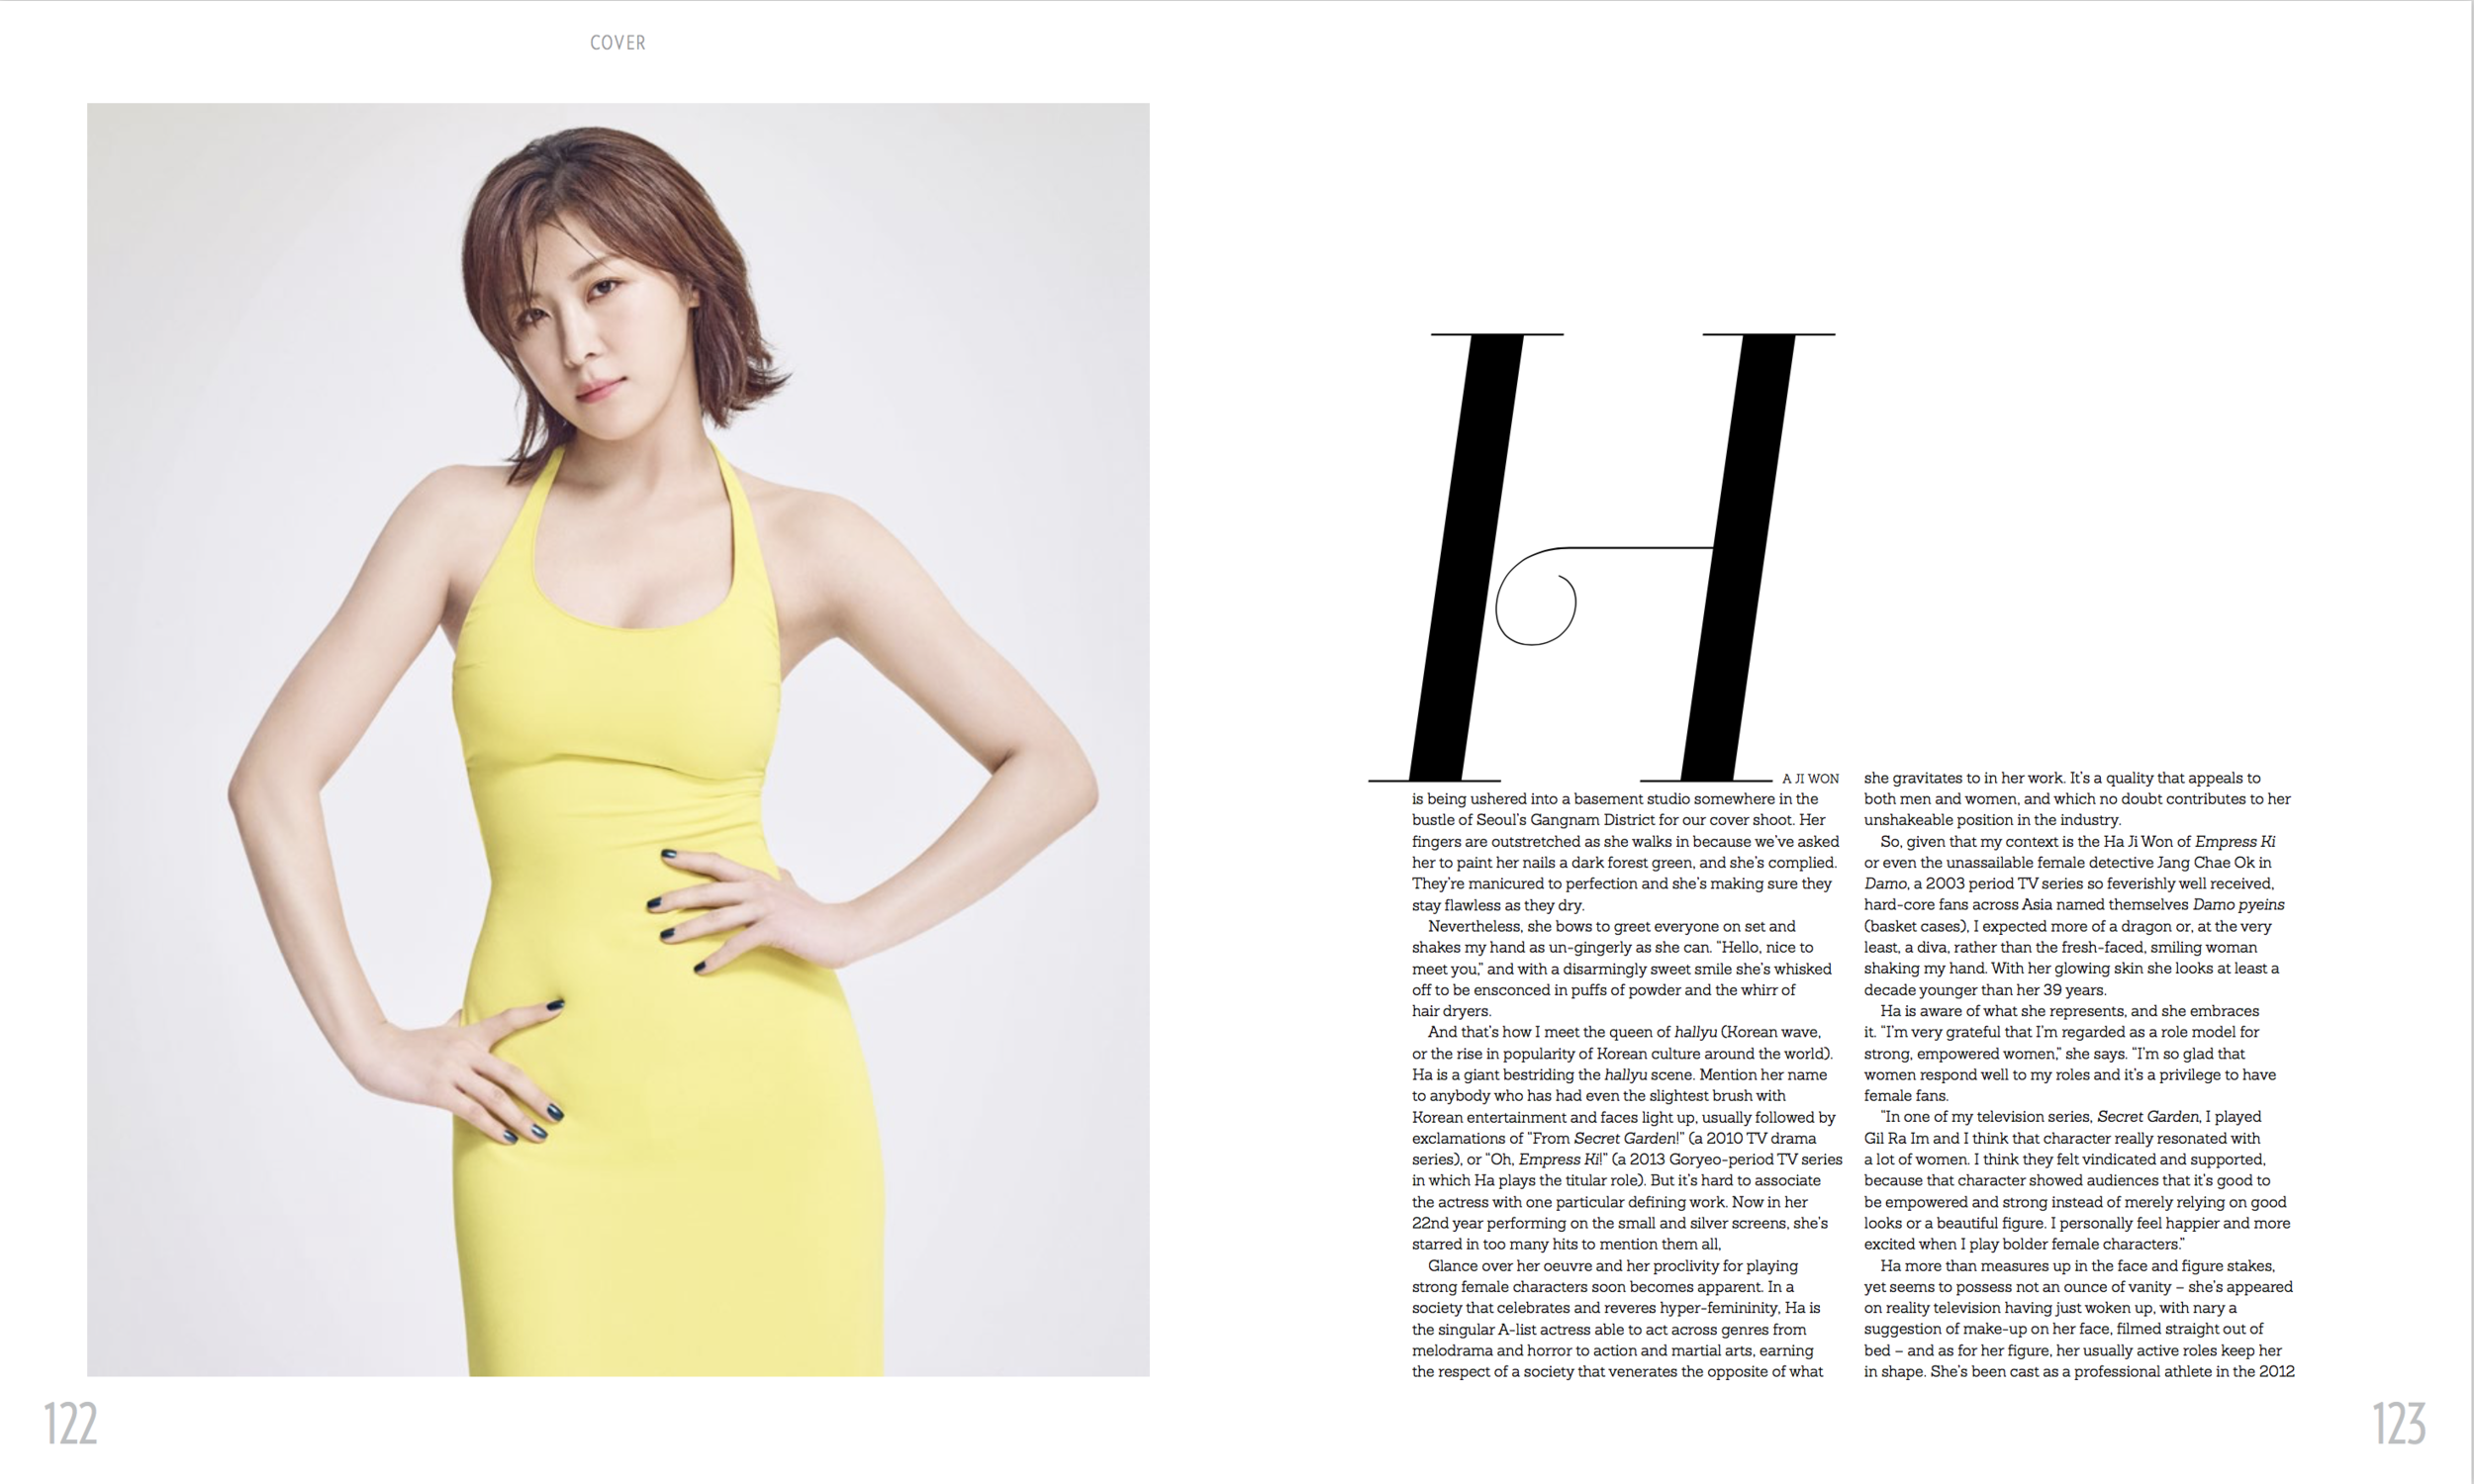 Ha Ji Won Prestige April Cover Story Zaneta Cheng 2:4.png